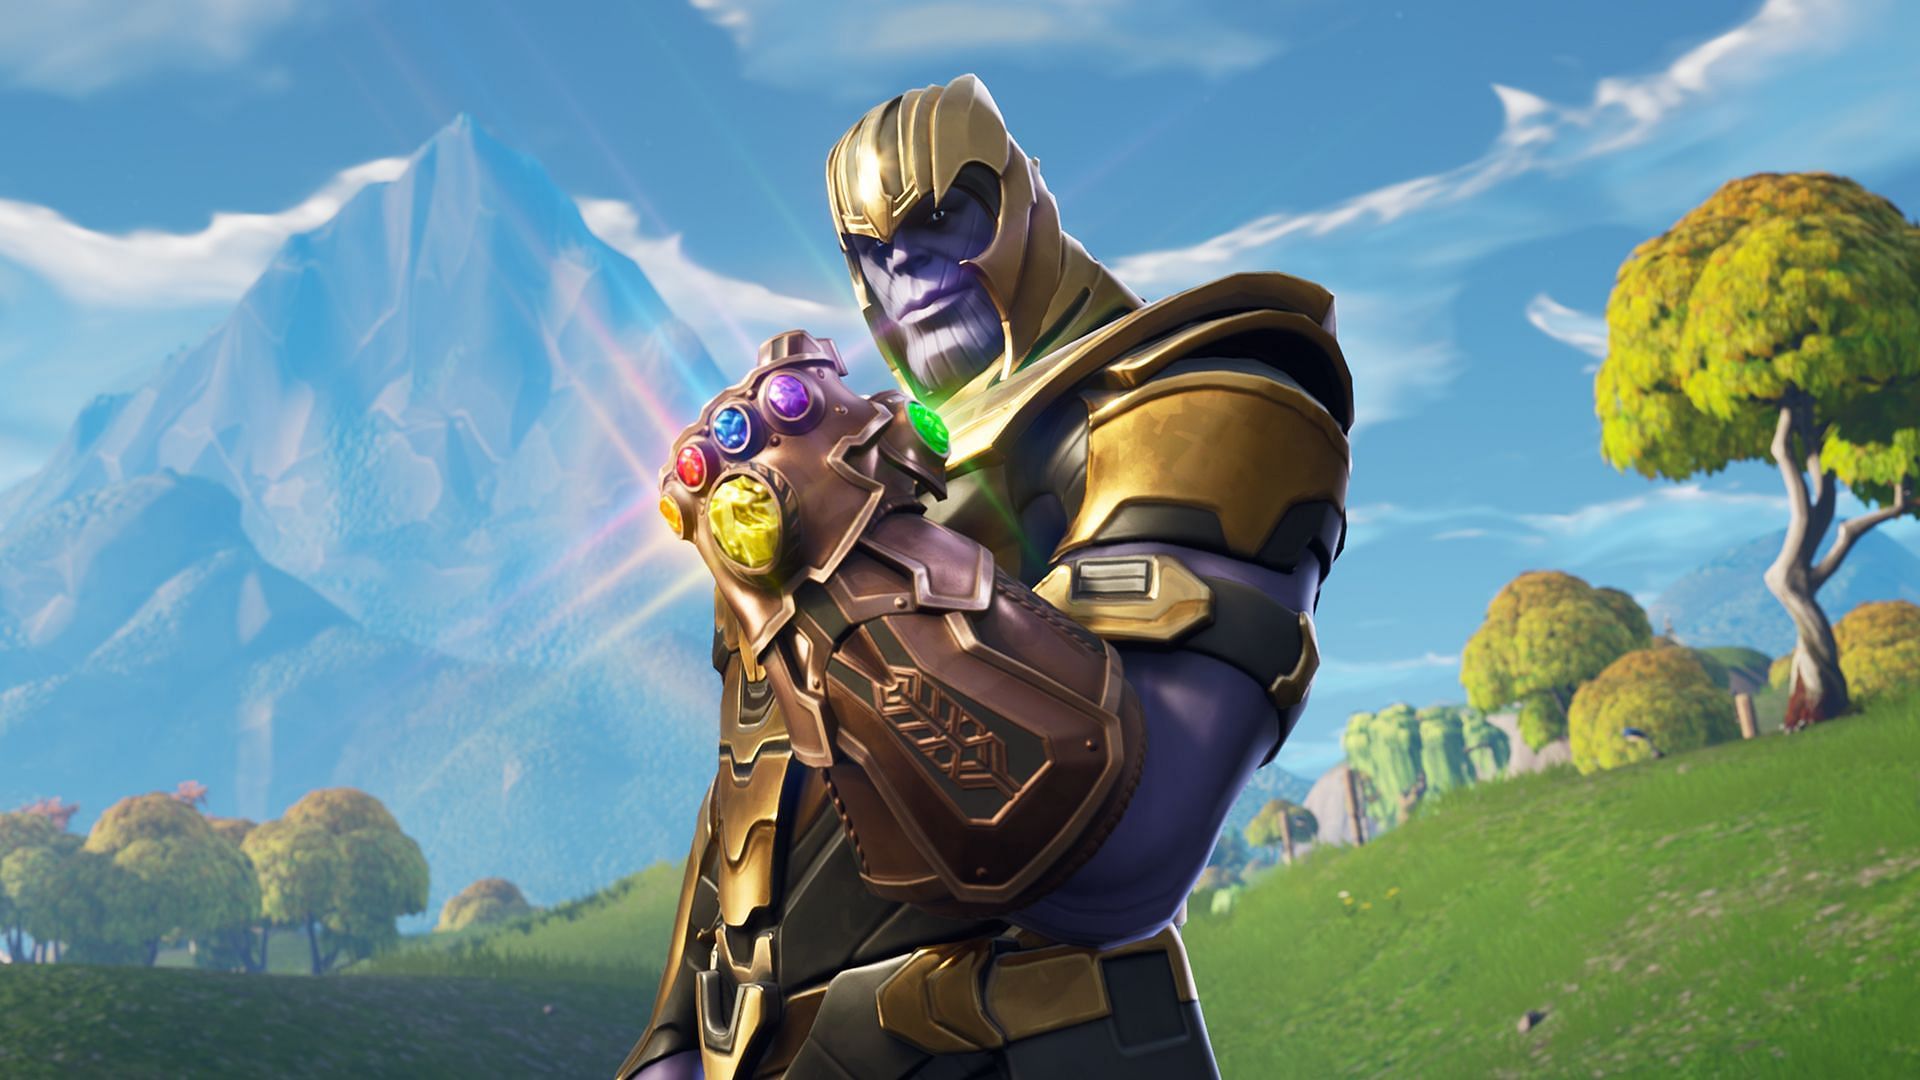 Thanos Avec Le Gauntlet Est Un Personnage Intensément Puissant.  Image Via Epic Games